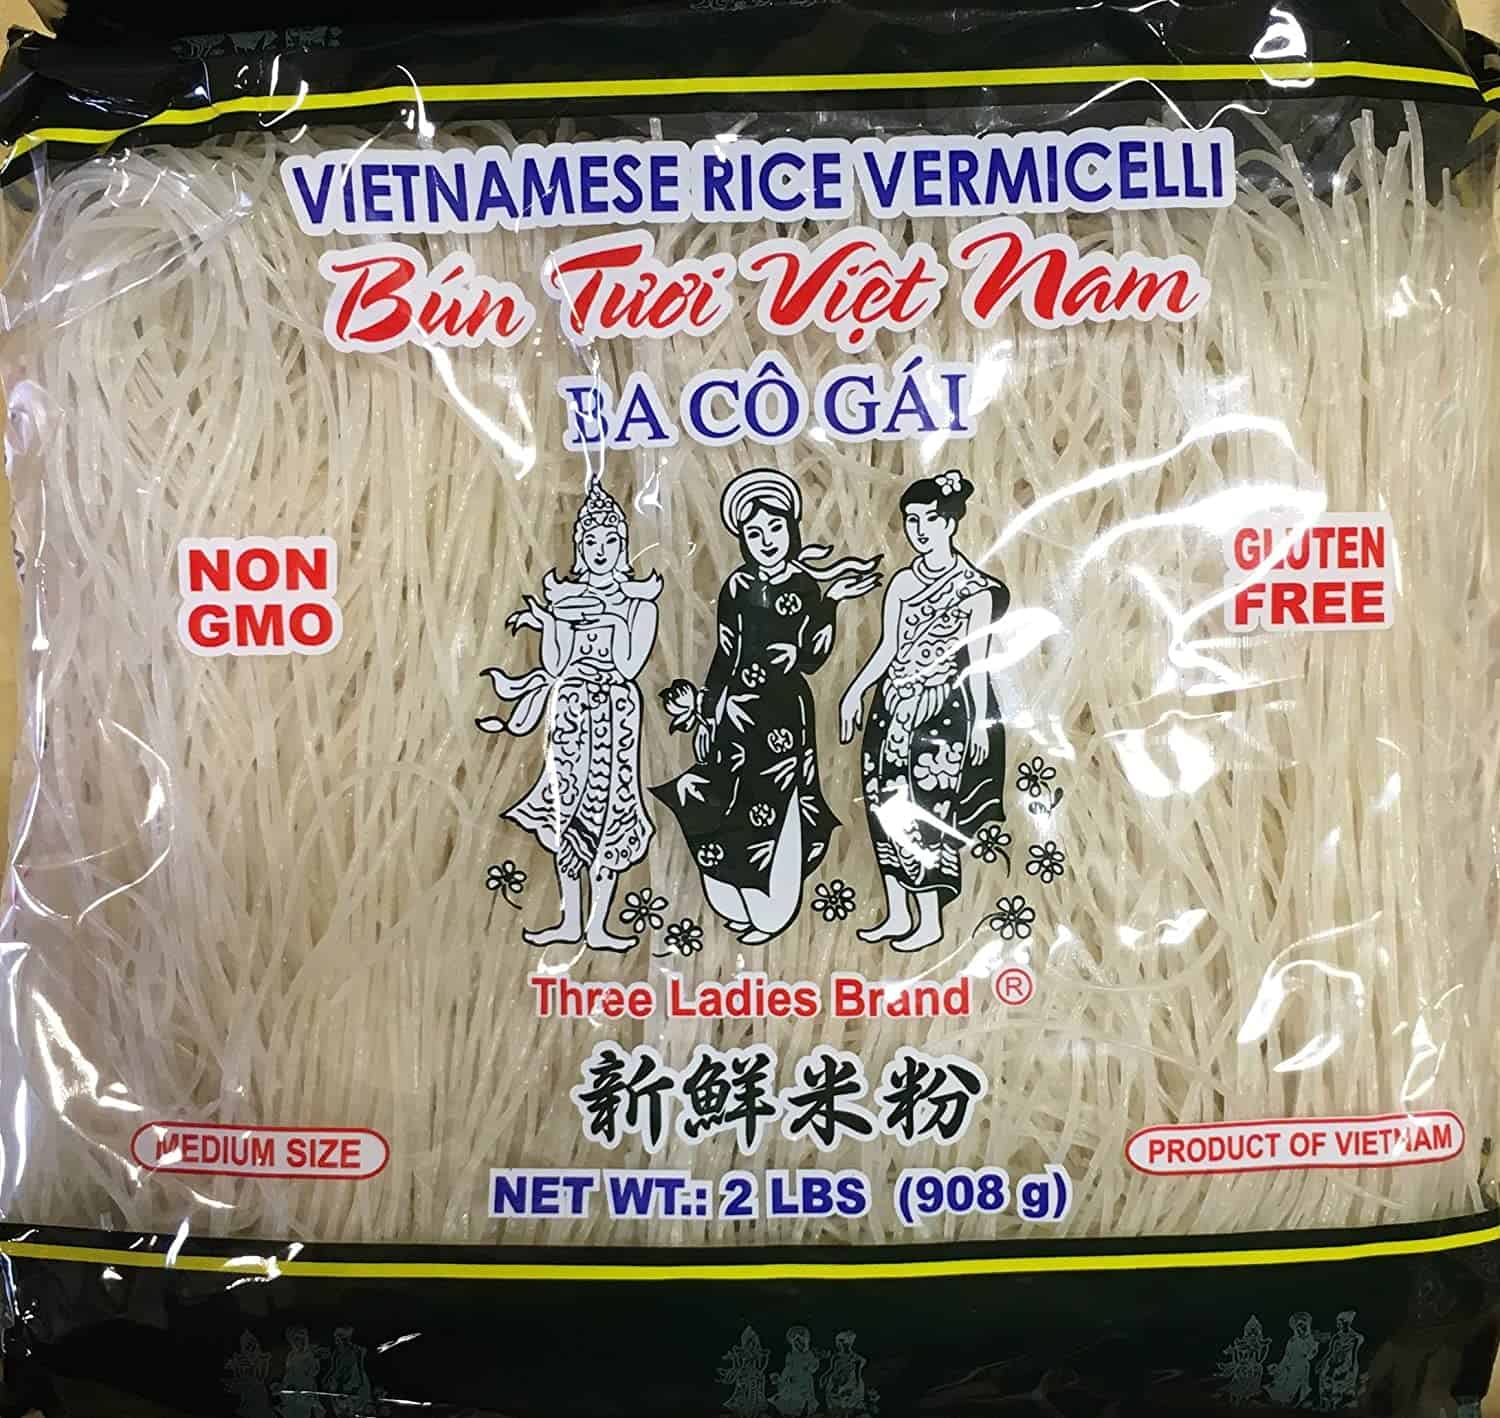 התחליף הטוב ביותר לאטריות ראמן וייטנאמי רייס סטיק vermicelli מותג שלוש נשים